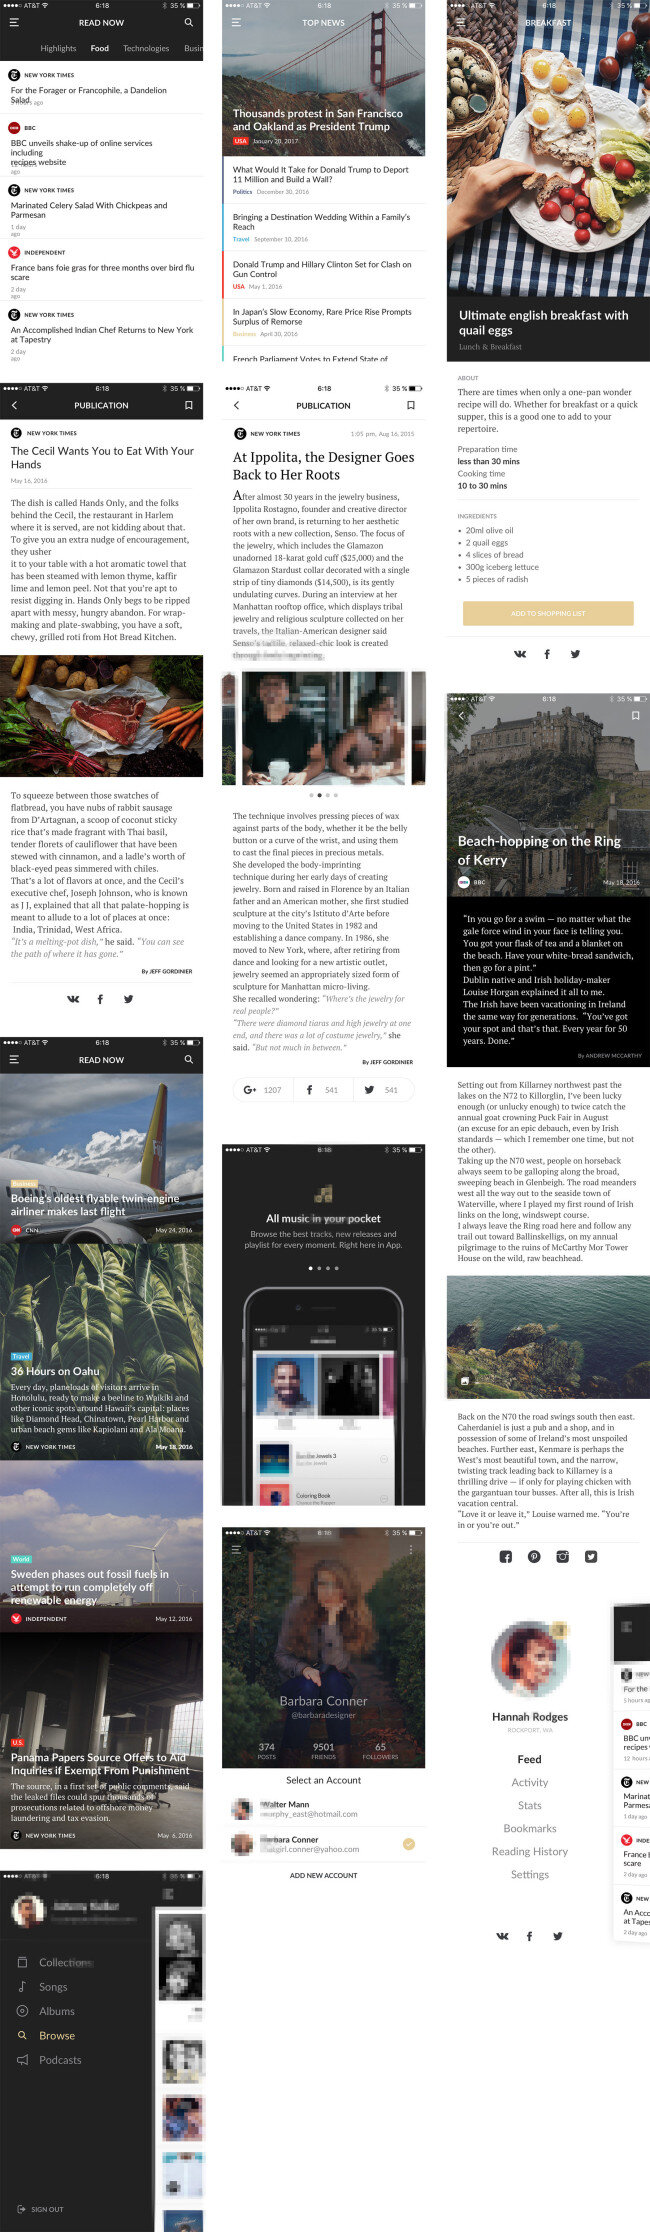 新闻 阅读 应用 界面 移动 手机 app ui boston 新闻和阅读 应用界面